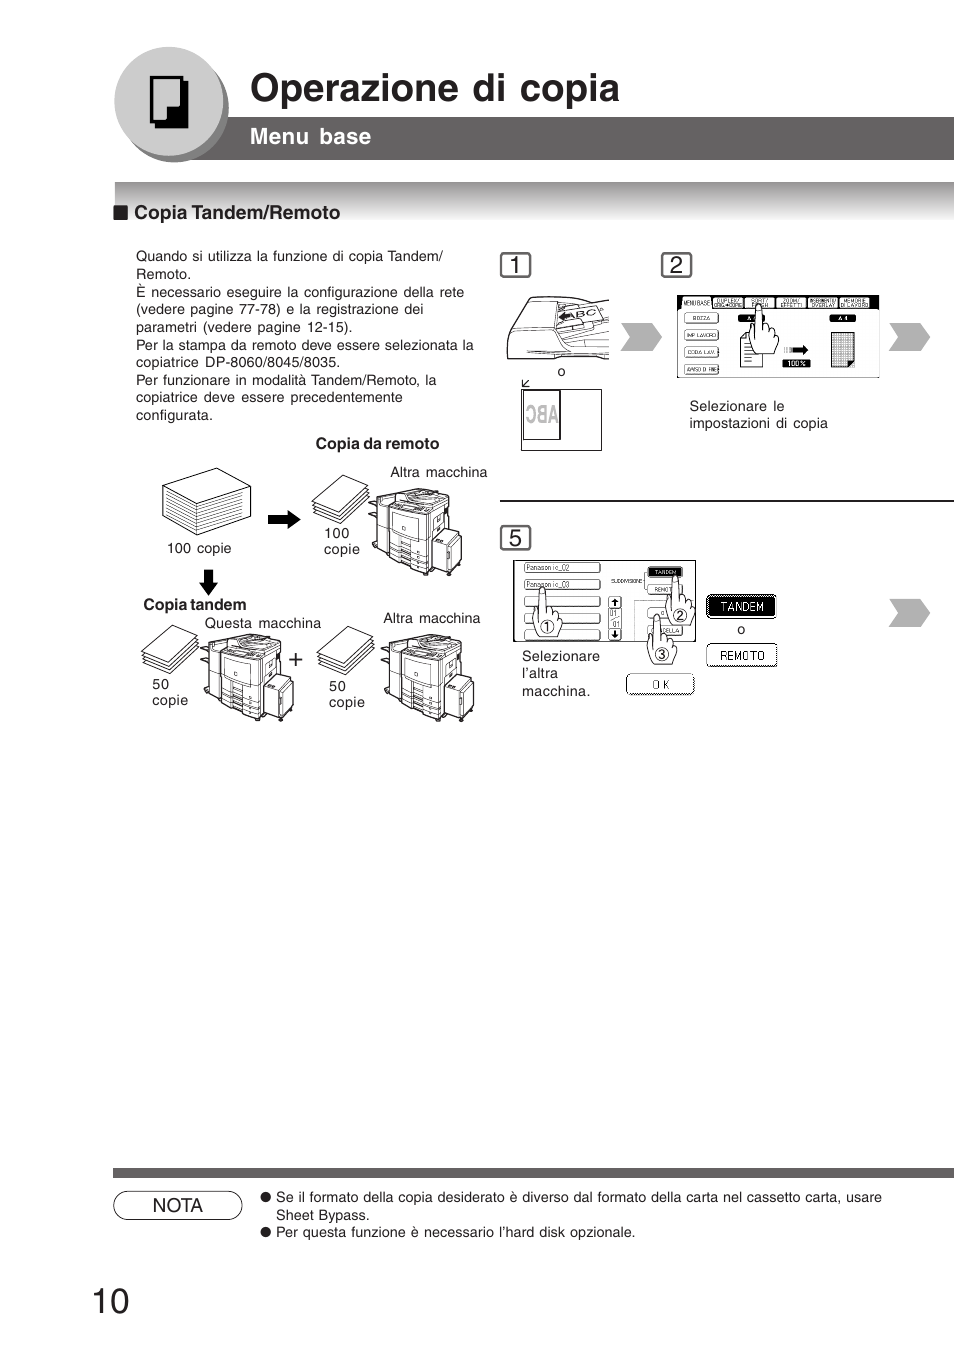 Copia tandem/remoto, Operazione di copia, Menu base | Panasonic DP8045 Manuale d'uso | Pagina 10 / 92